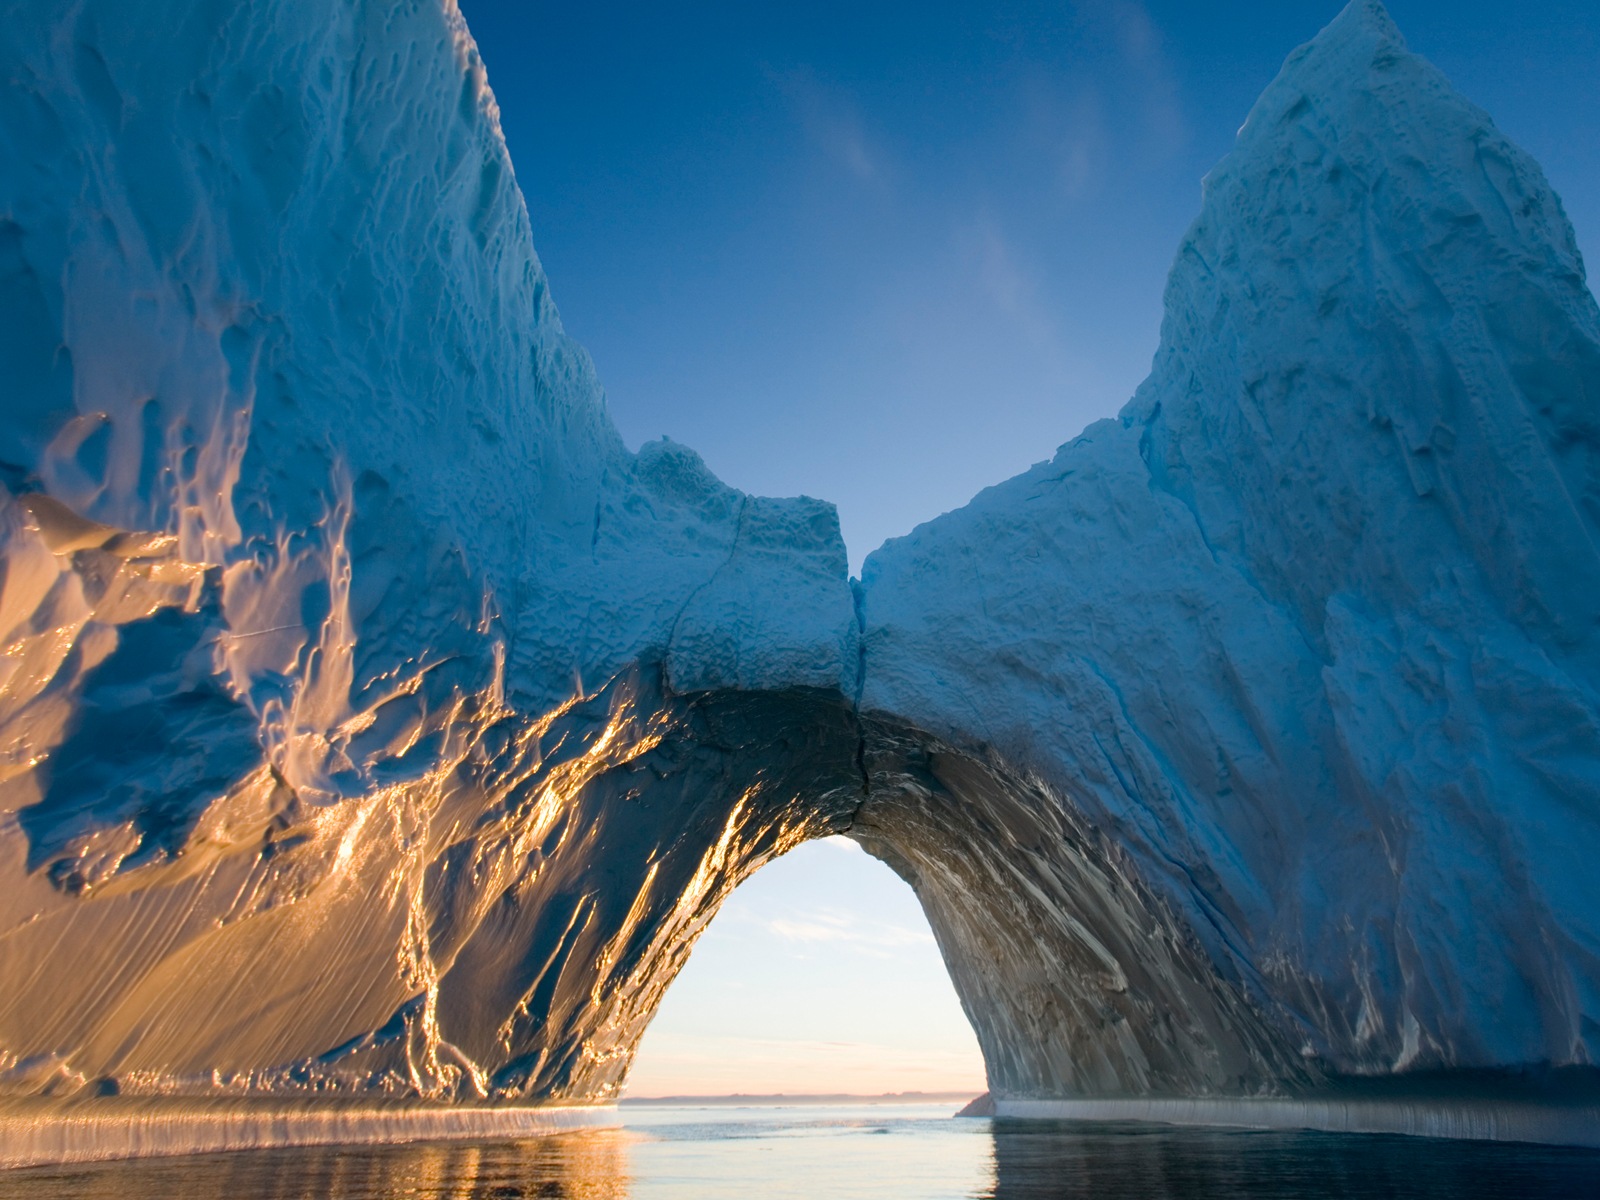 Windows 8: Fondos del Ártico, el paisaje ecológico, ártico animales #3 - 1600x1200